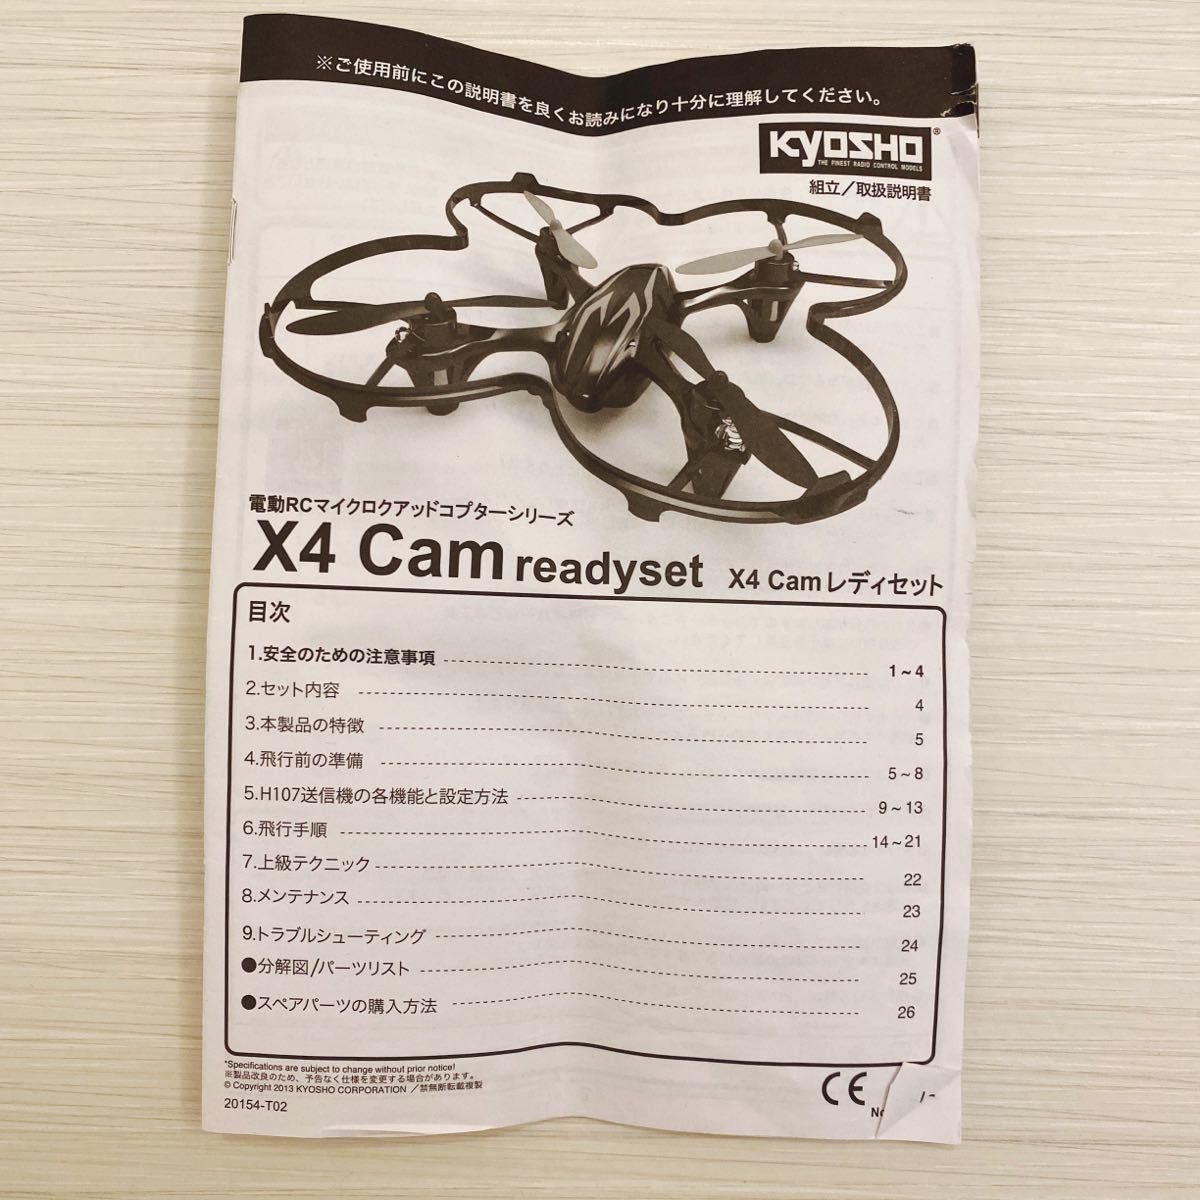 【ジャンク品】京商 X4 Cam readyset マイクロクアッドコプター